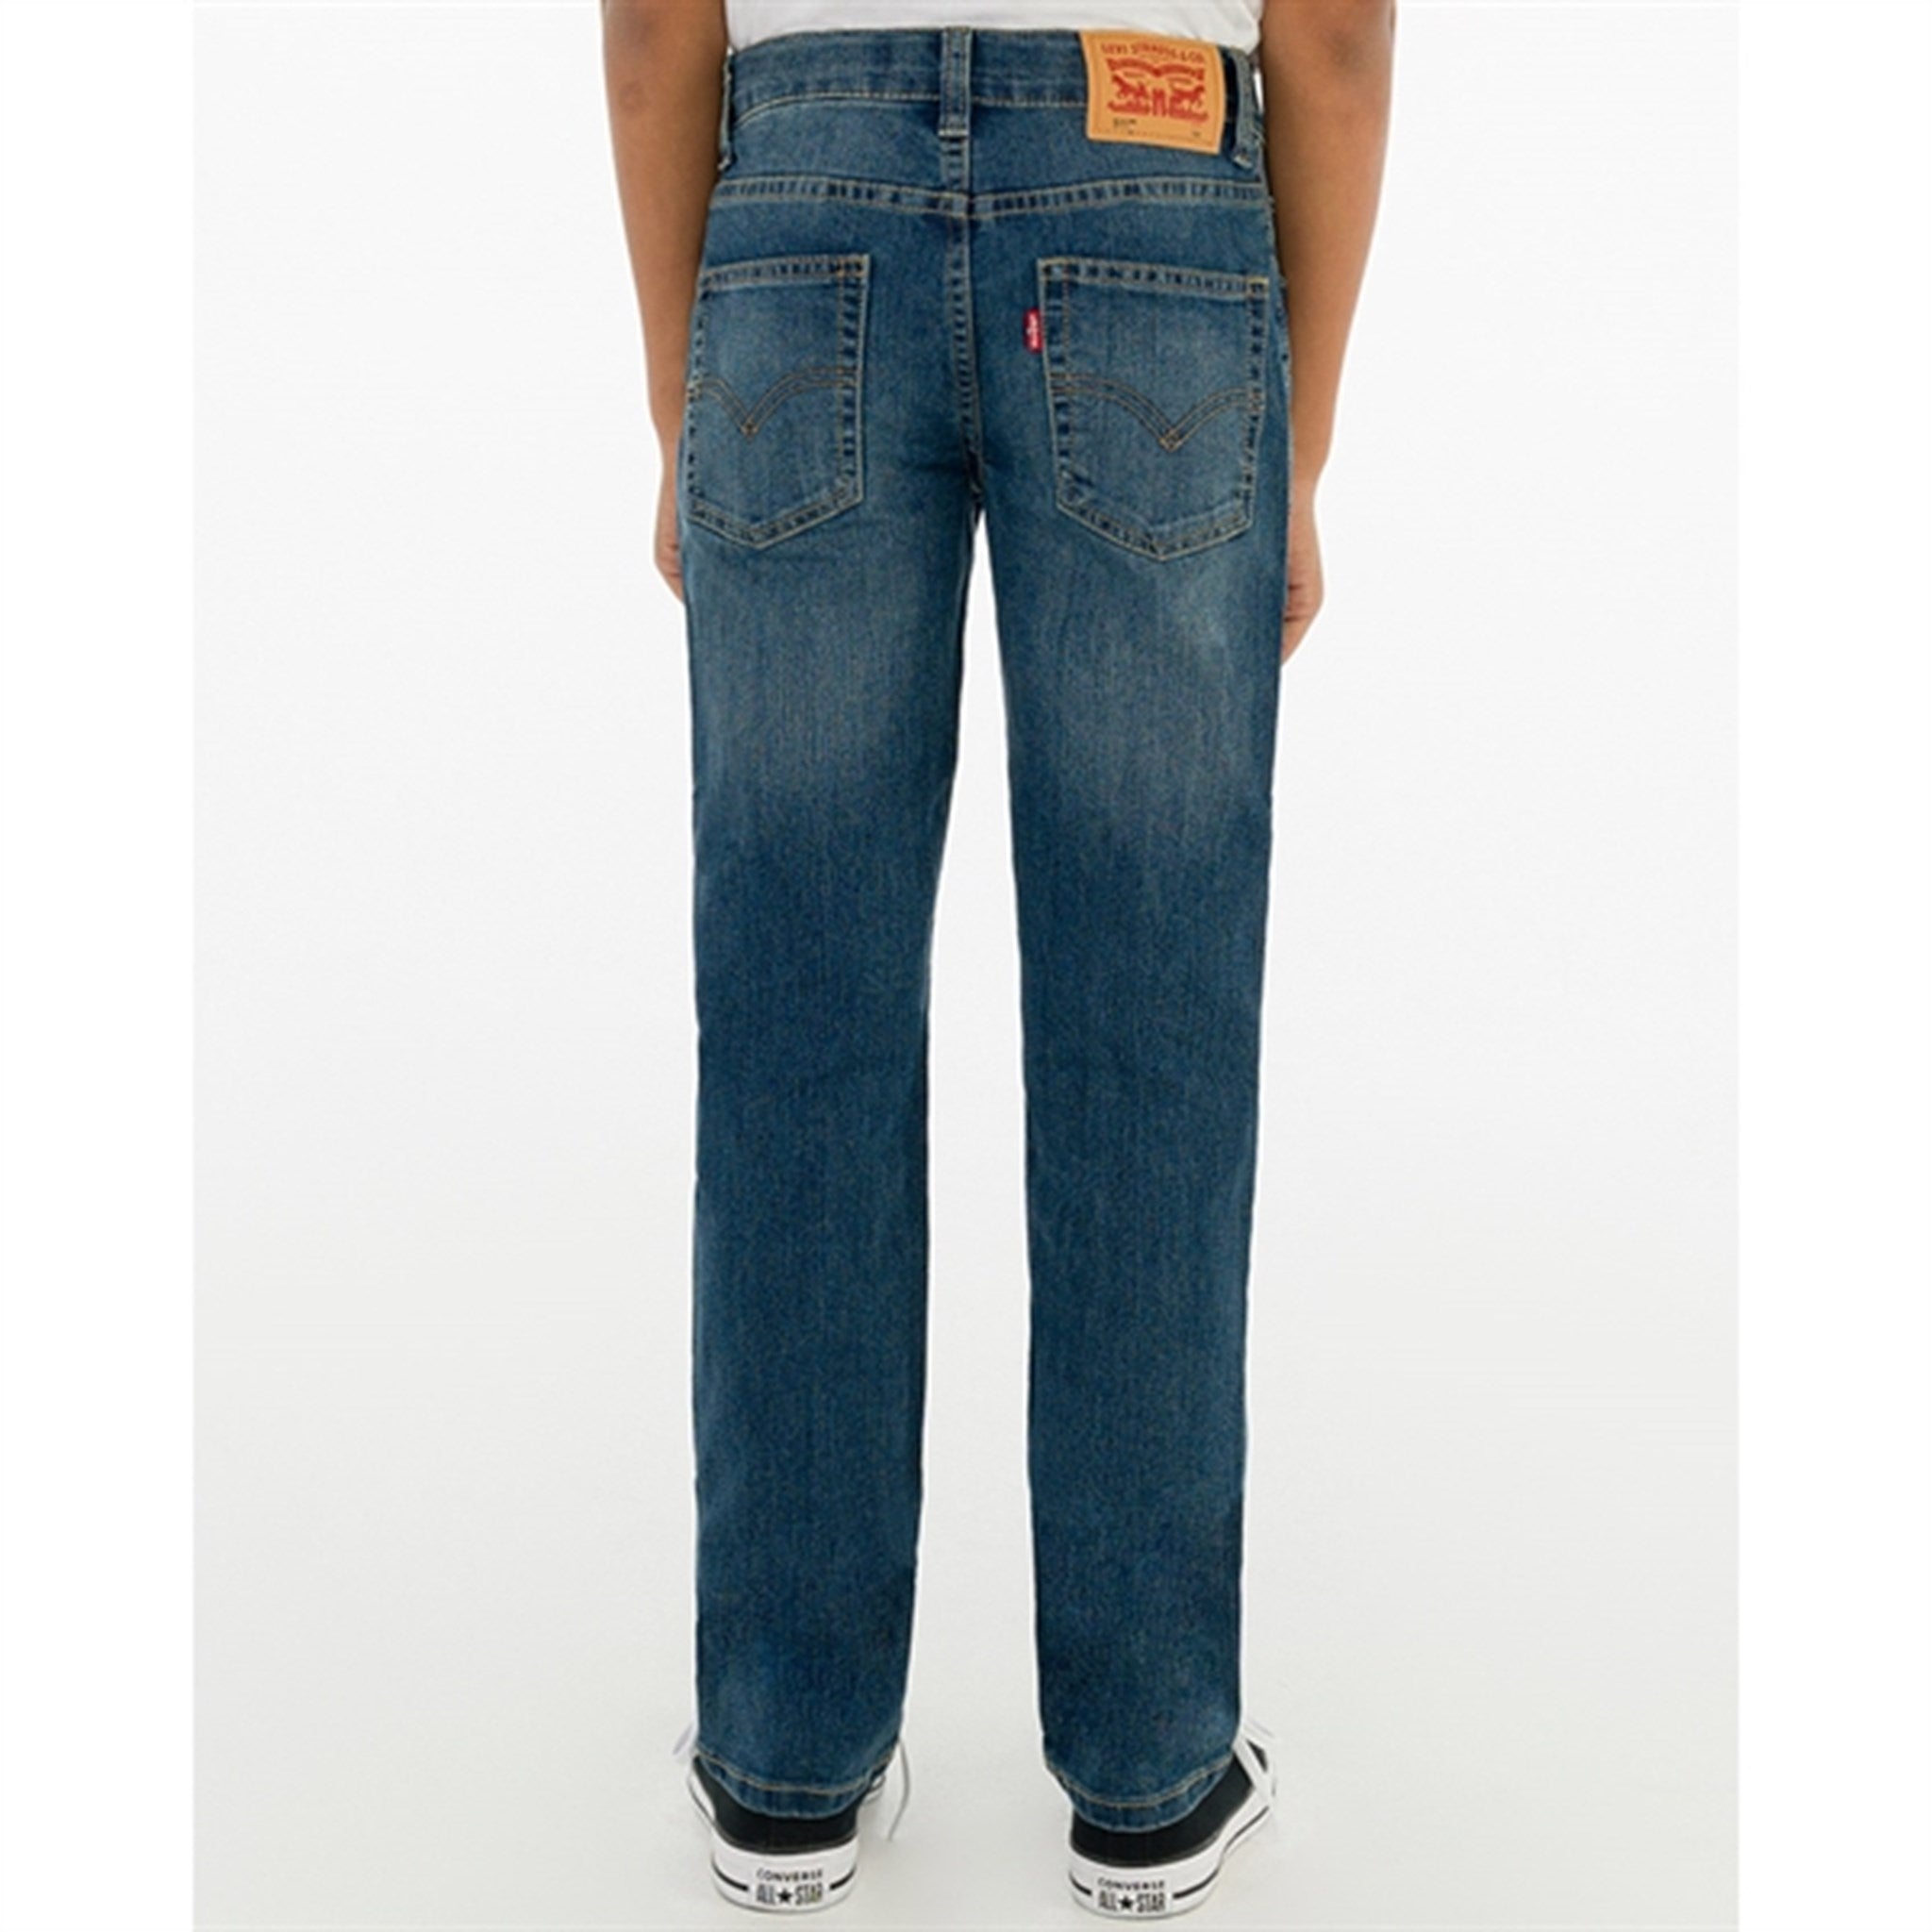 Levi's 511 Slim Fit Jeans Yucatan 3